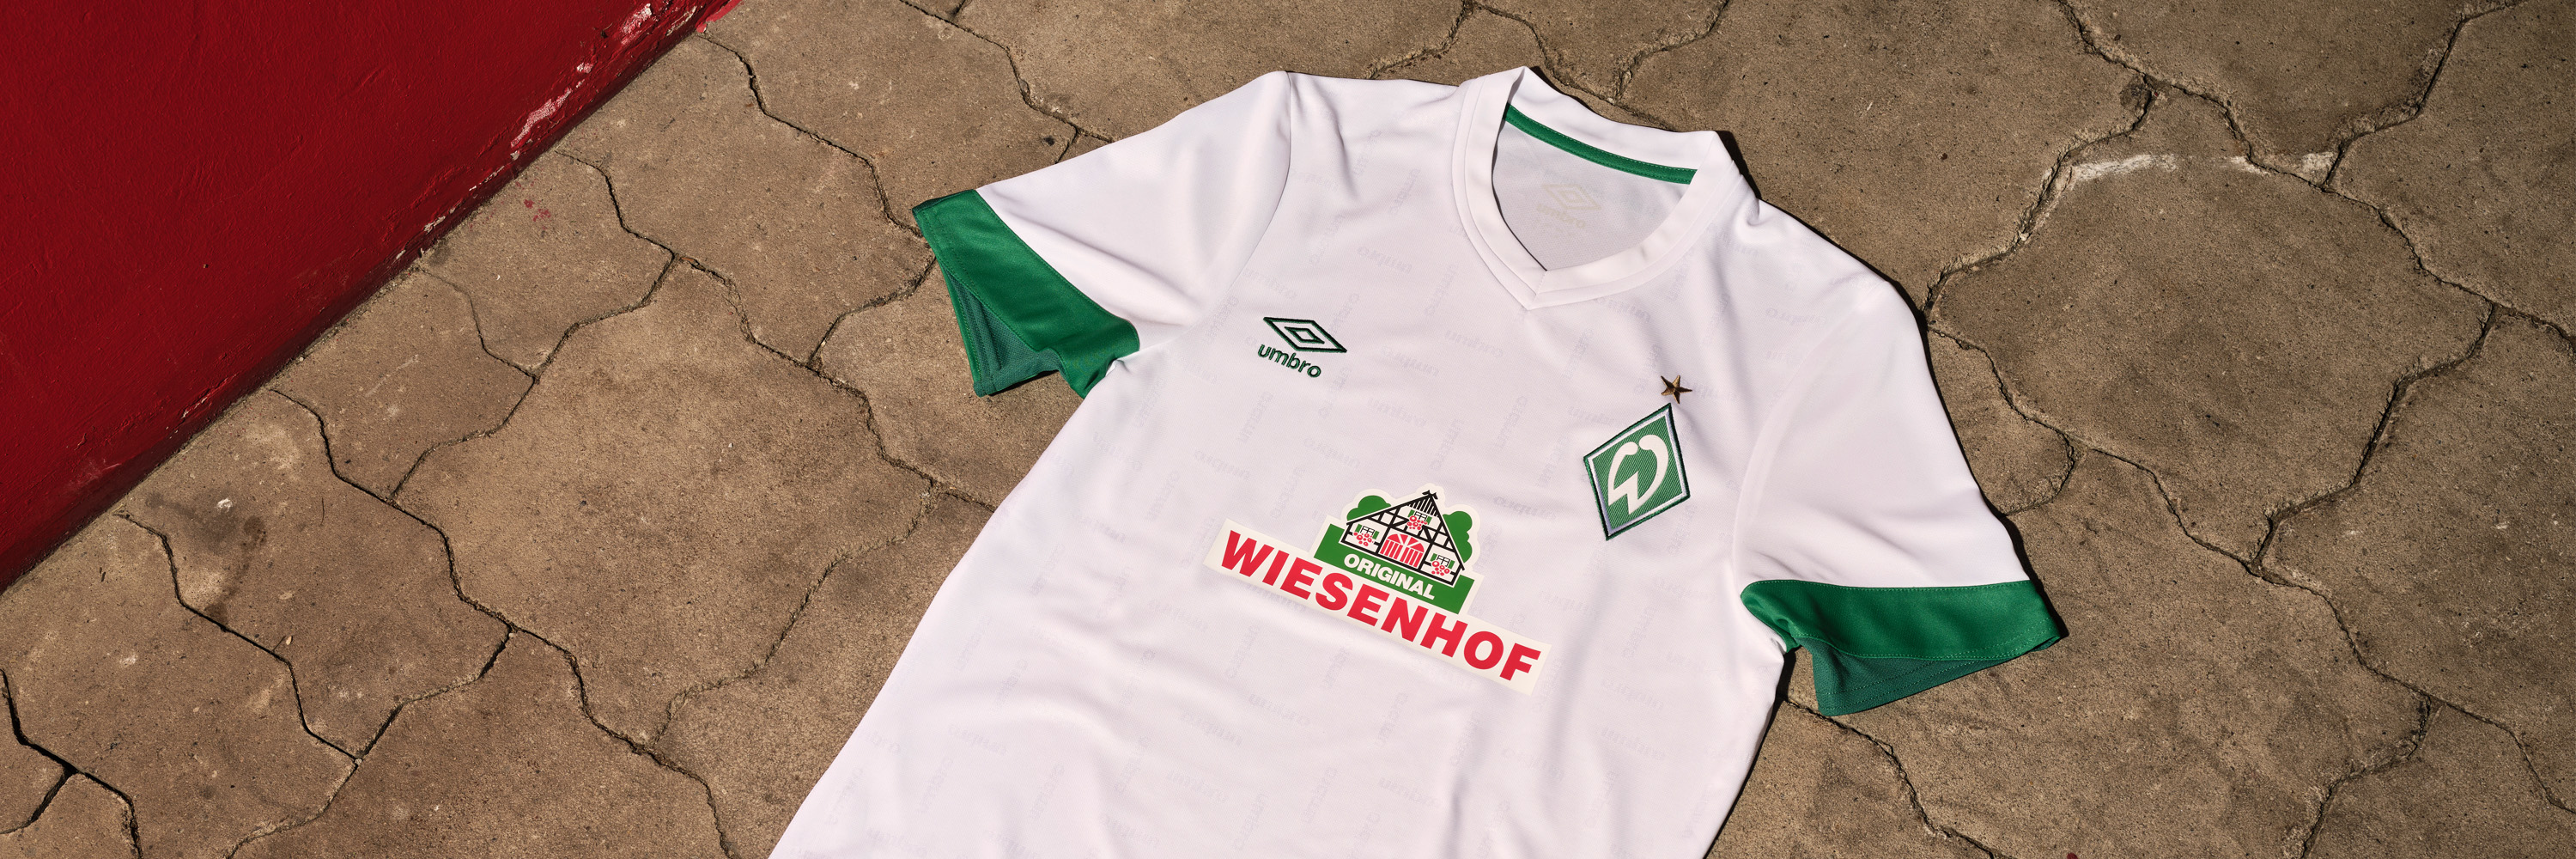 Umbro Werder Bremen Away Short _ Jnr Official Licensed Product 